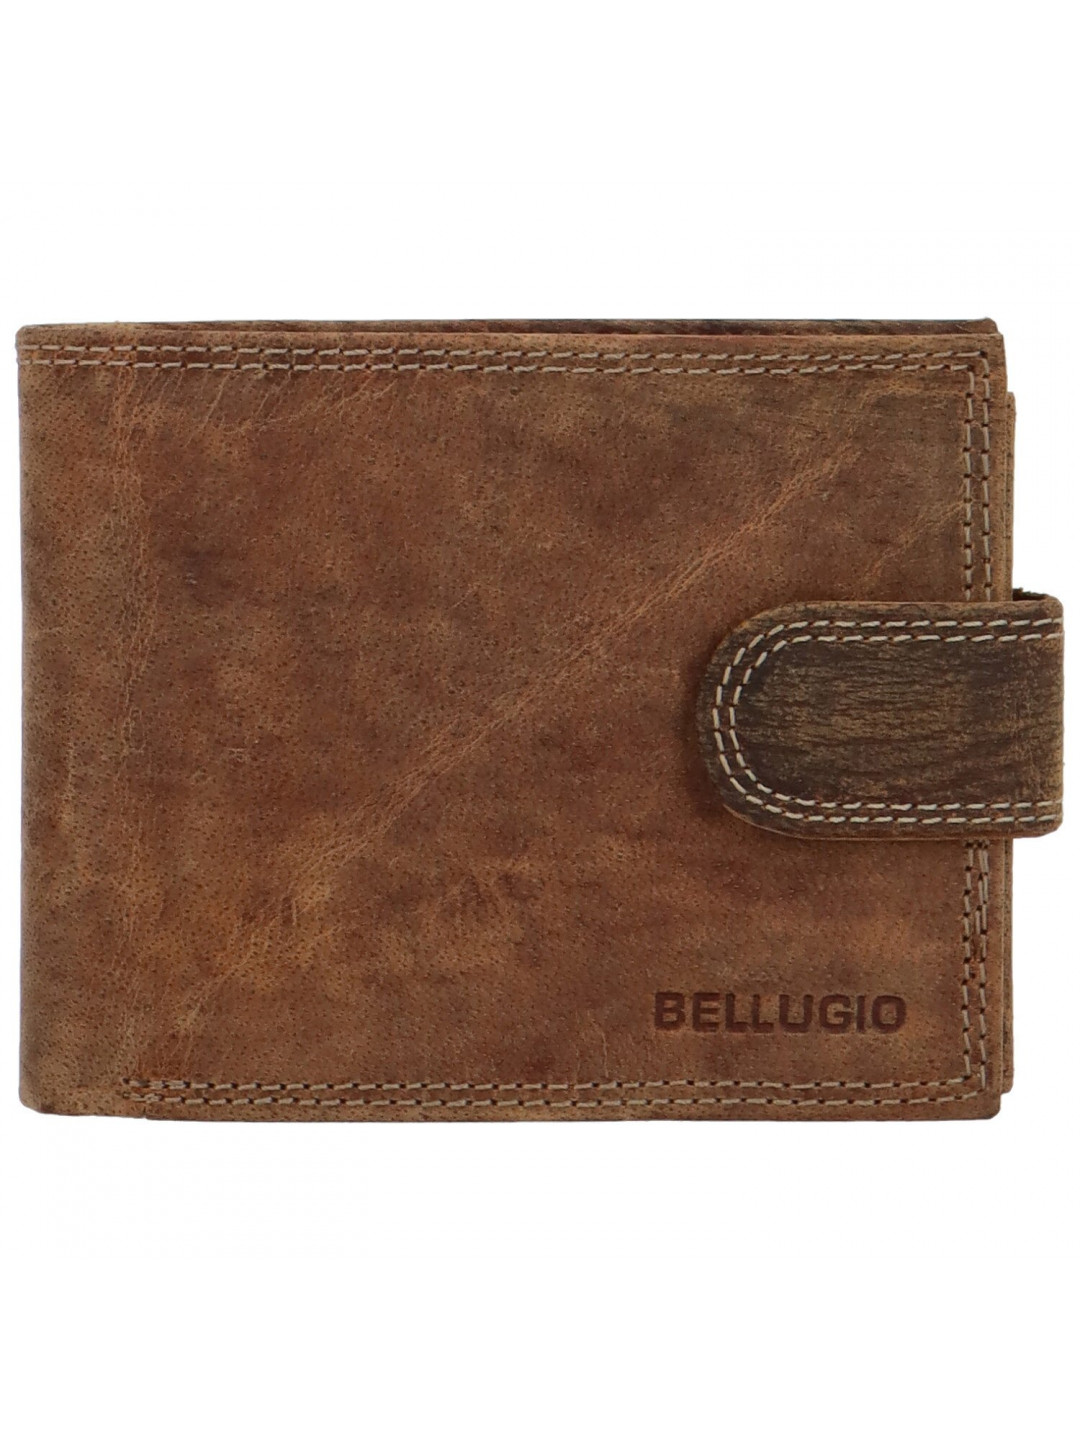 Pánská kožená peněženka na šířku Bellugio Louiss světle hnědá